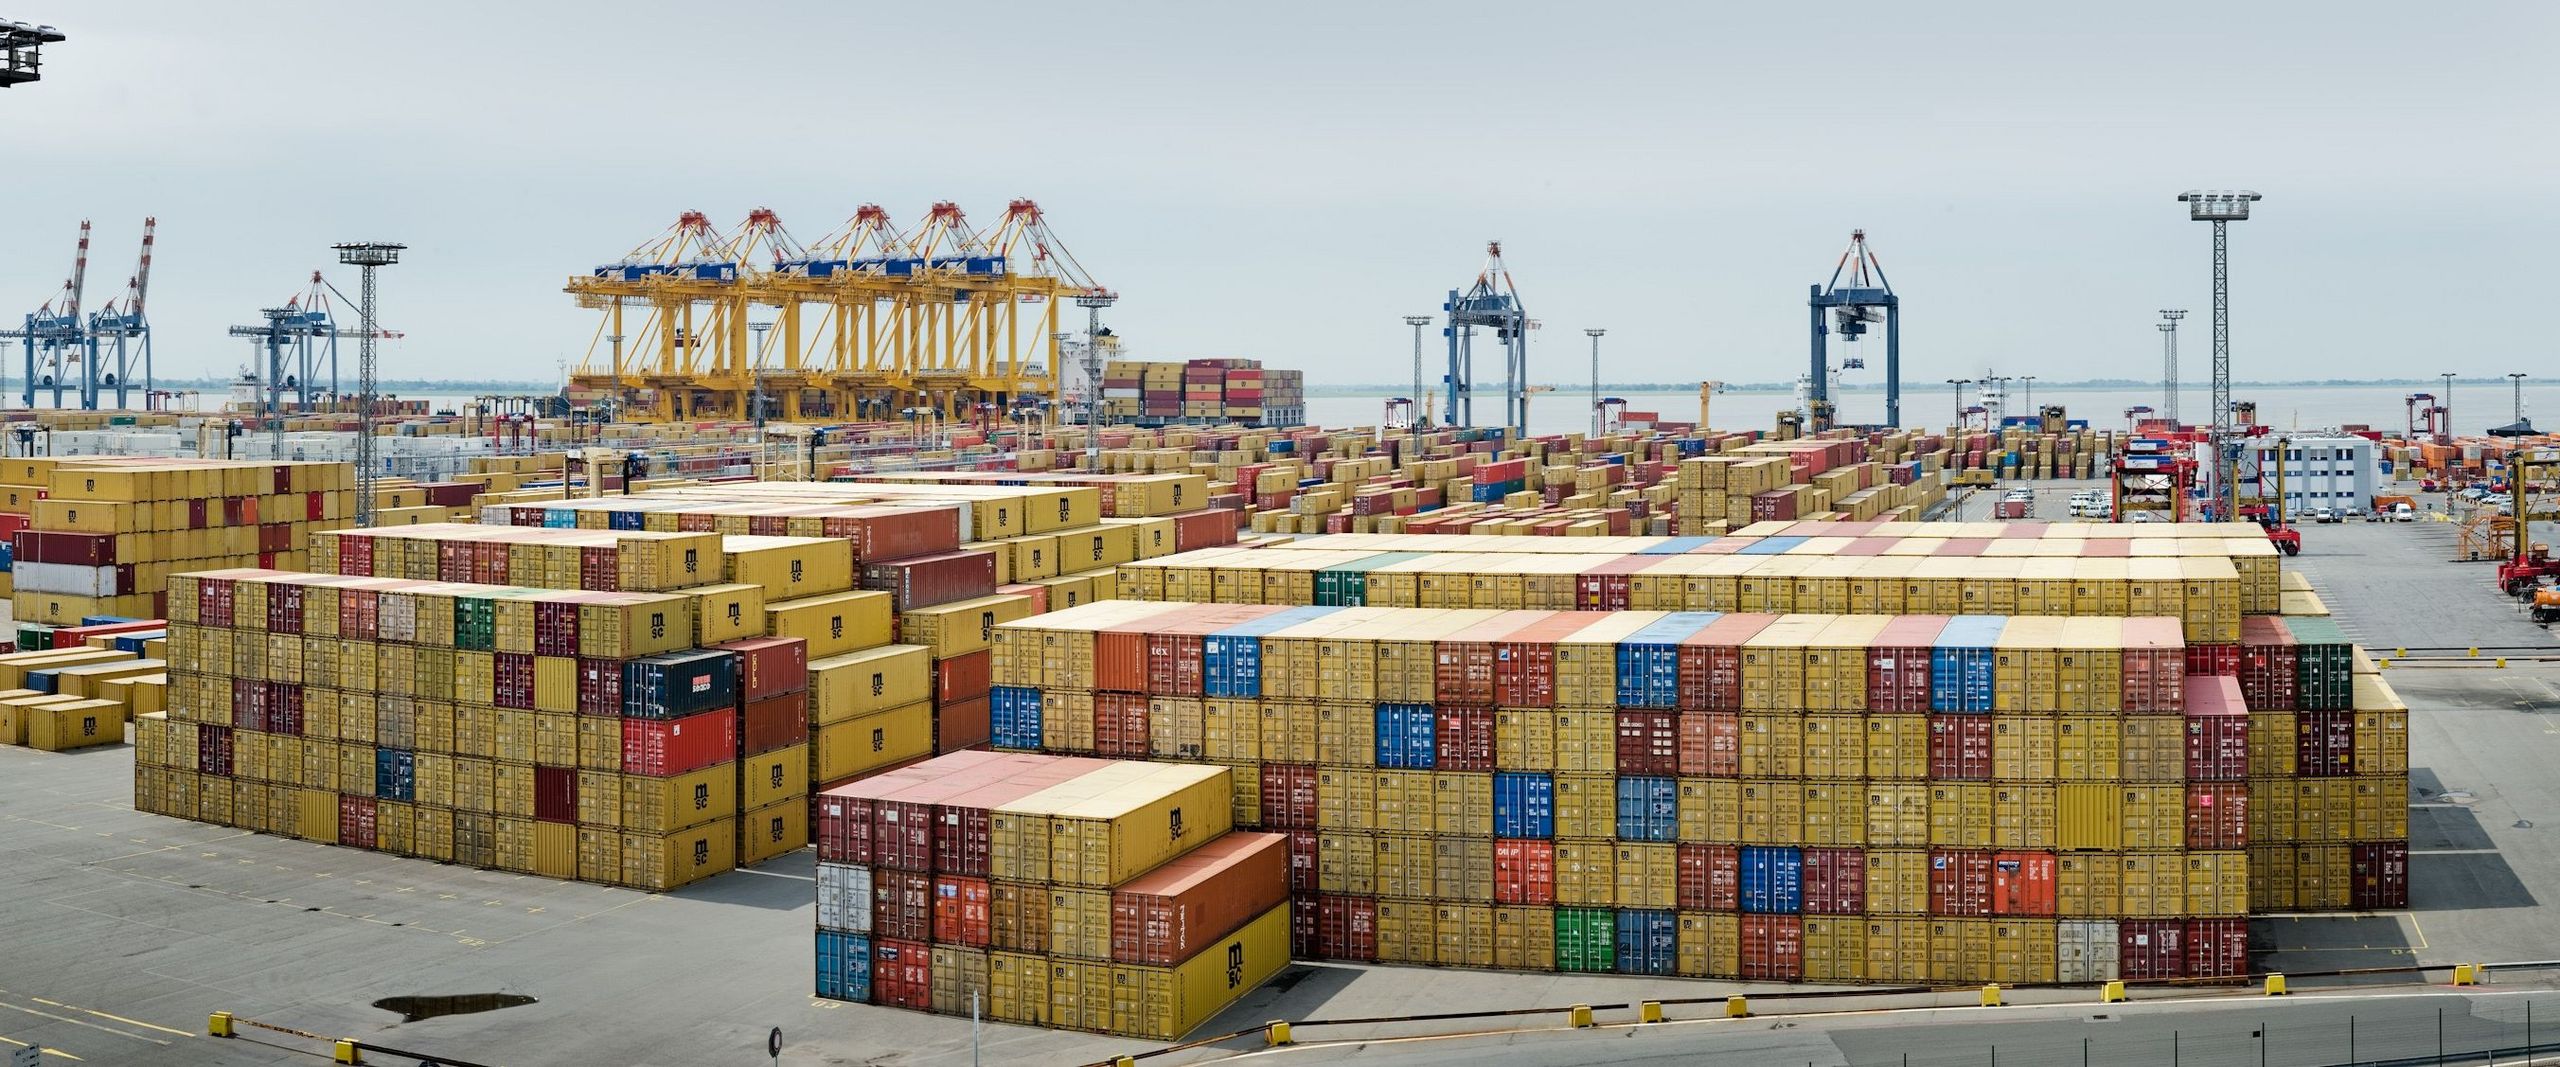 Eine große Anzahl gestapelter Überseecontainer im Containerterminal Bremerhaven.